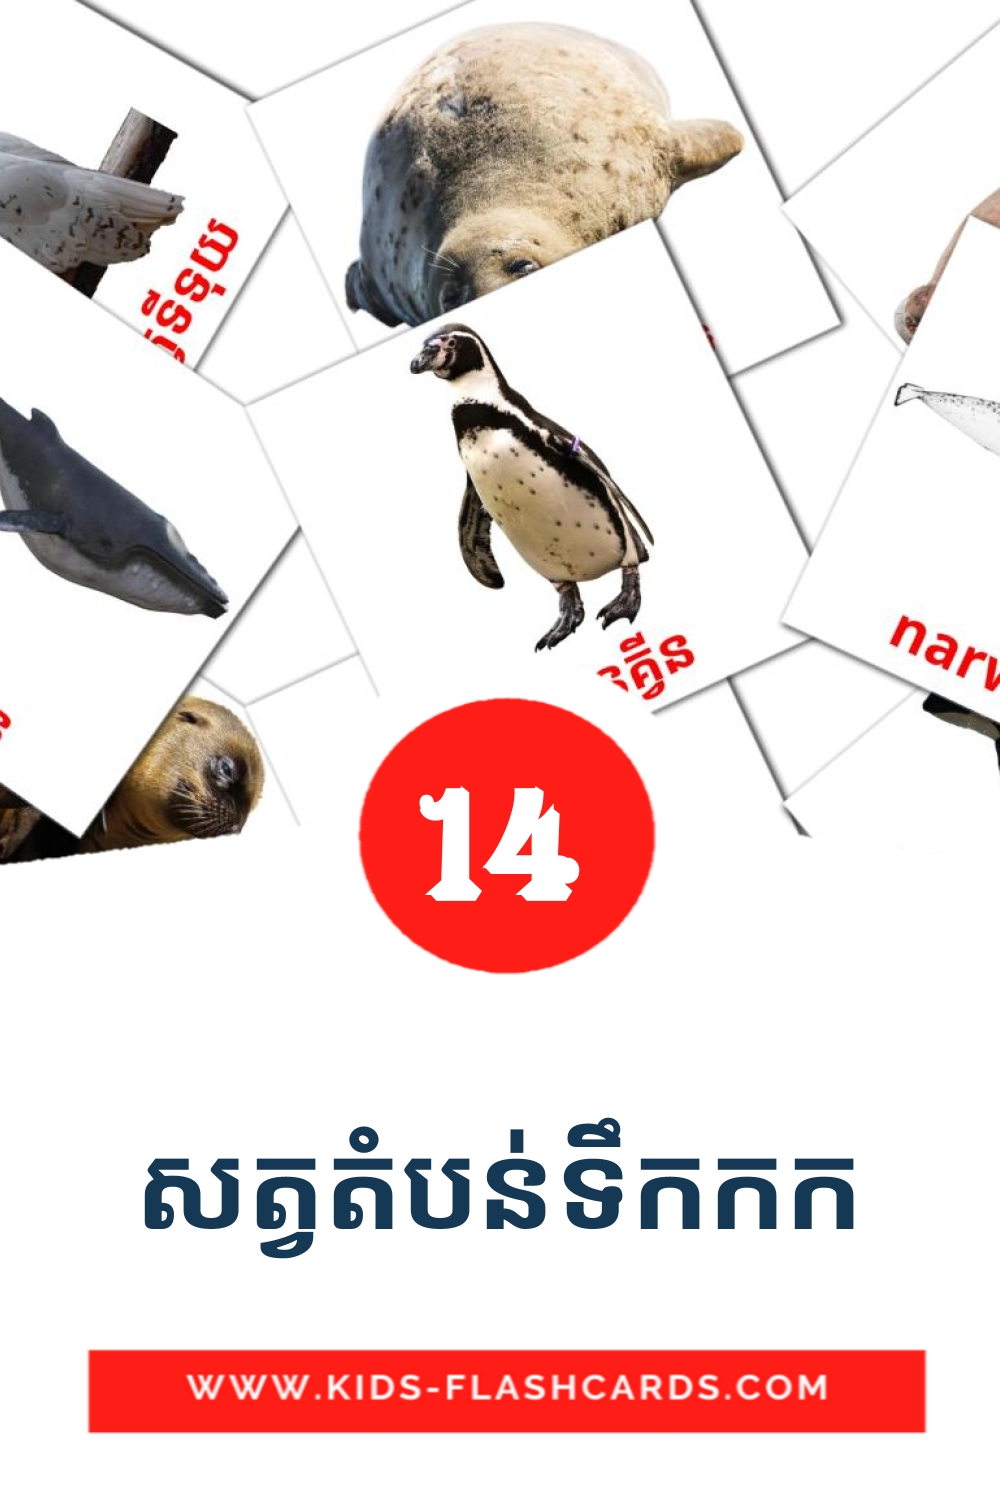 14 tarjetas didacticas de សត្វតំបន់ទឹកកក para el jardín de infancia en khmer